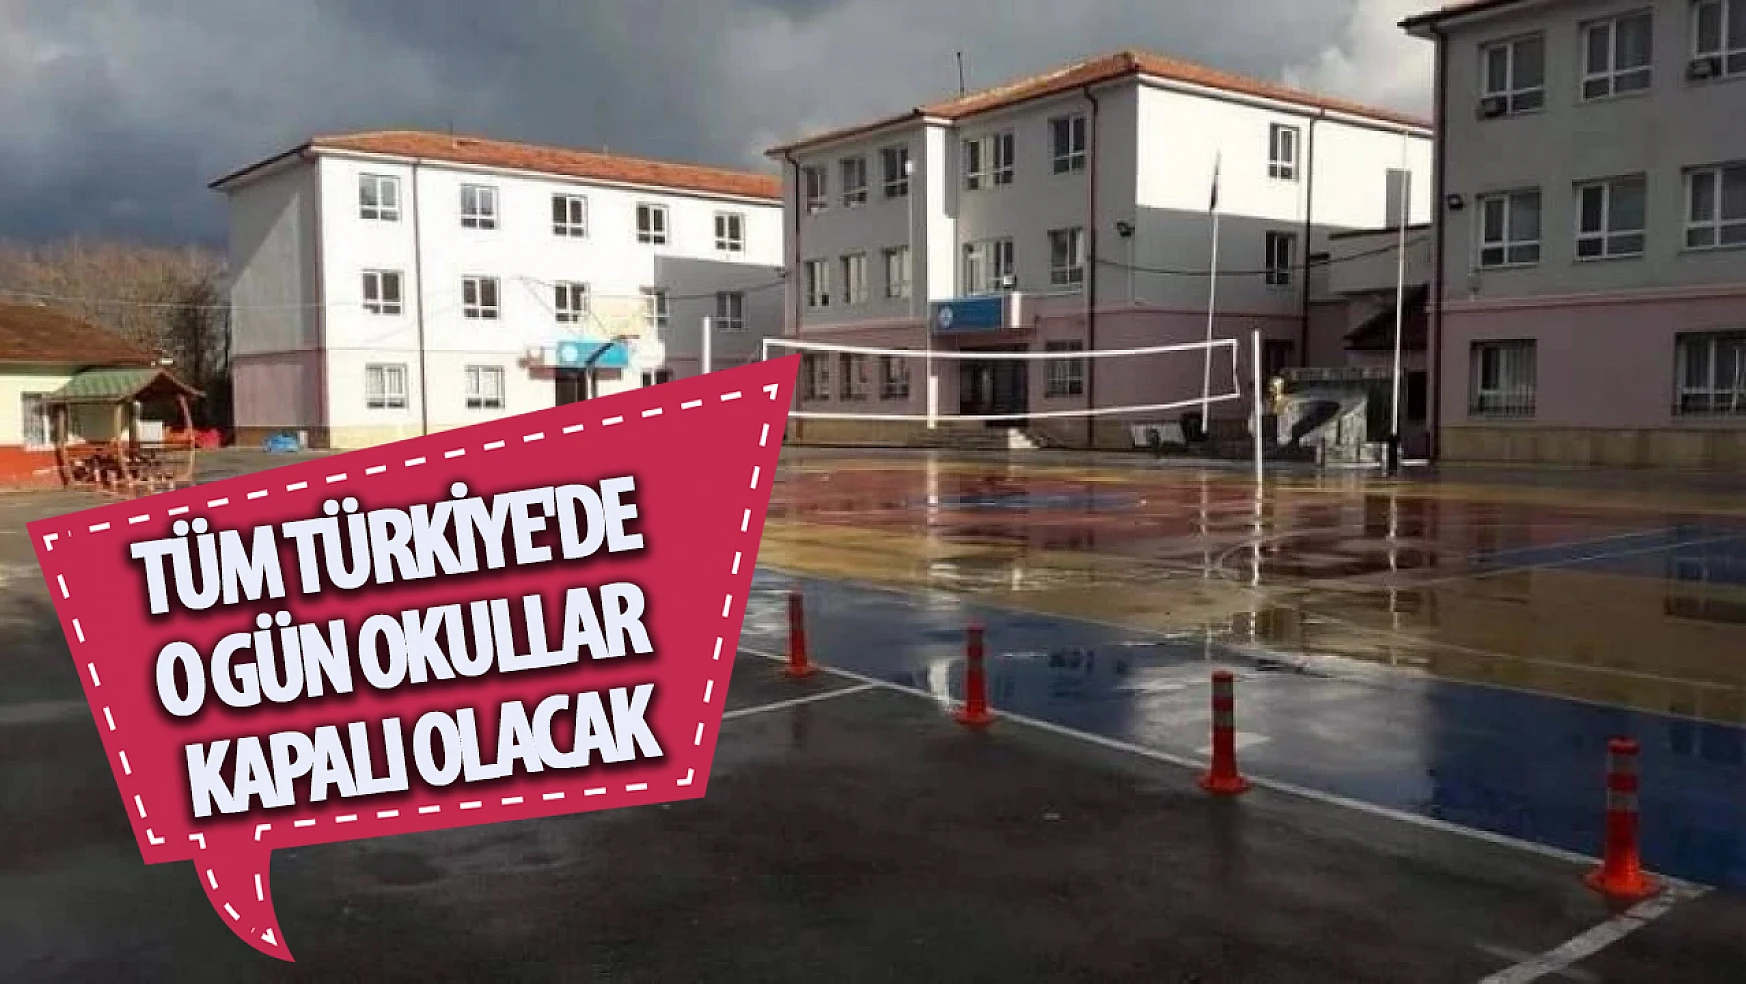 Tüm Türkiye'de o gün okullar kapalı olacak!